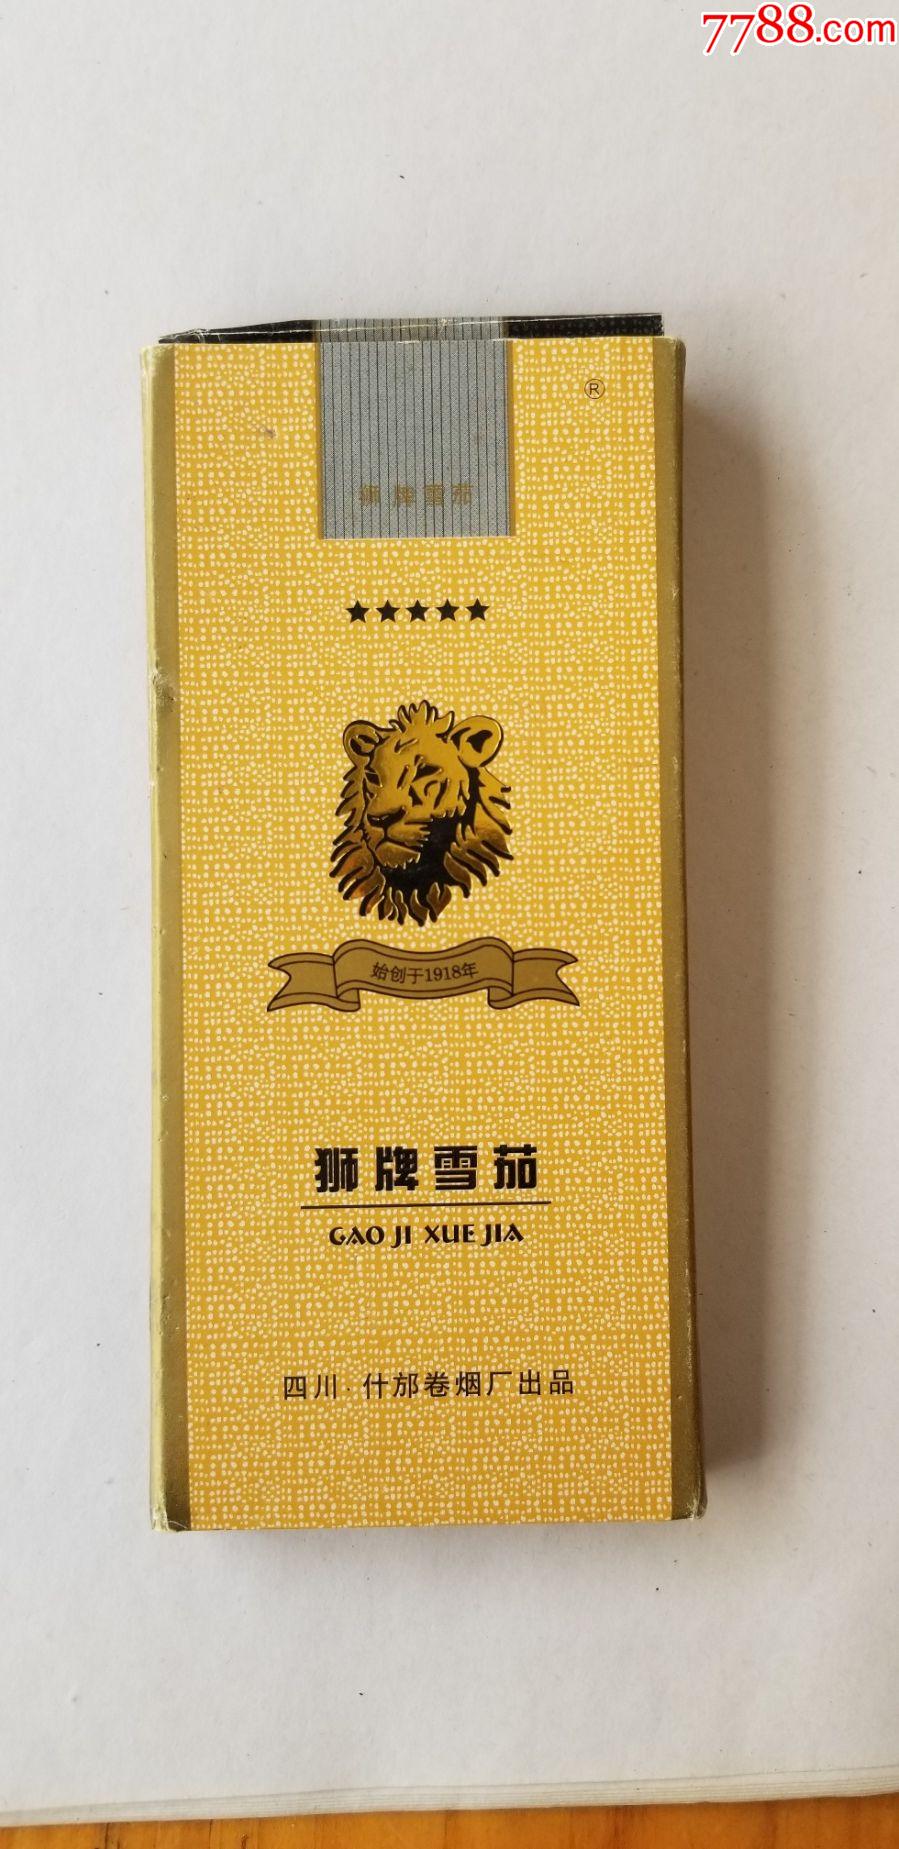 狮牌雪茄四川什邡卷烟厂出品